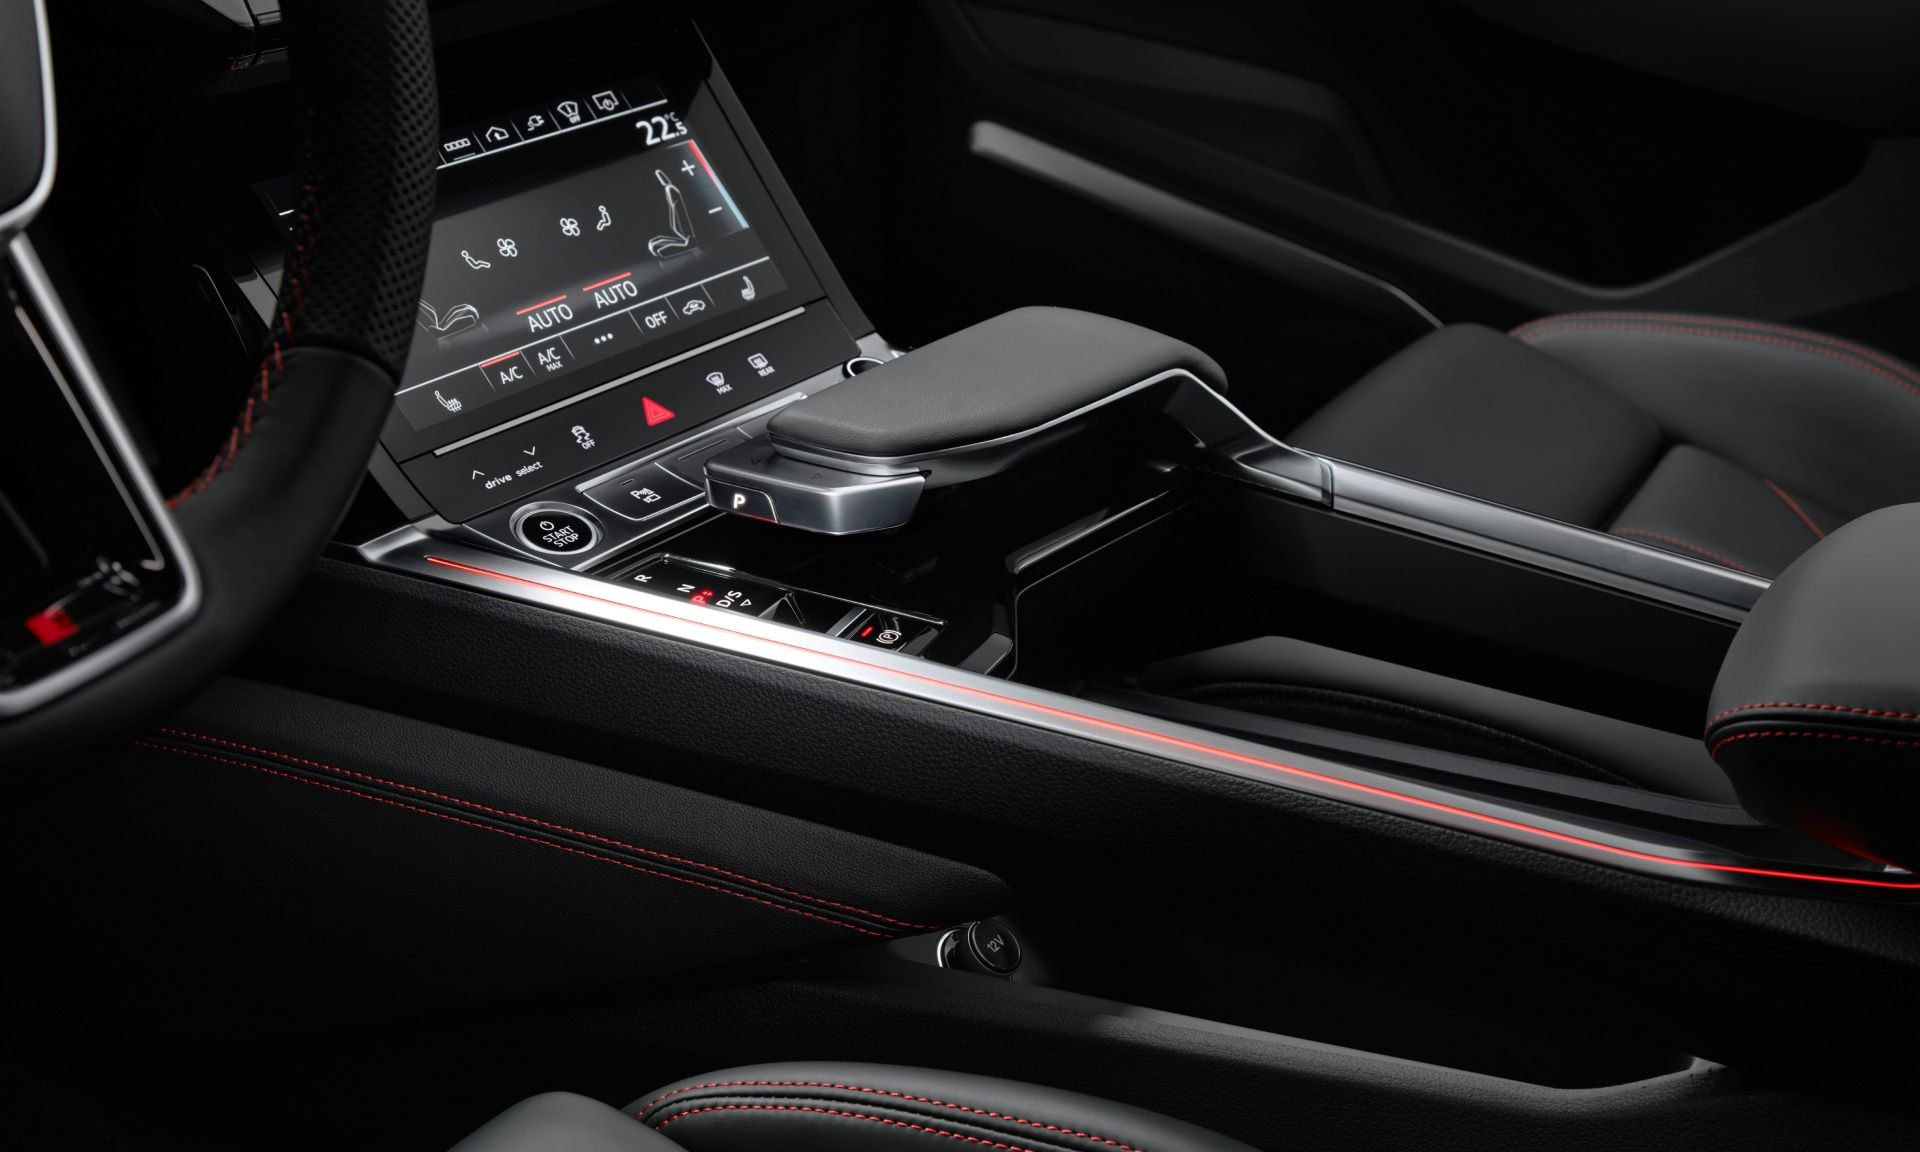 Consola central del Audi Q8 e-tron